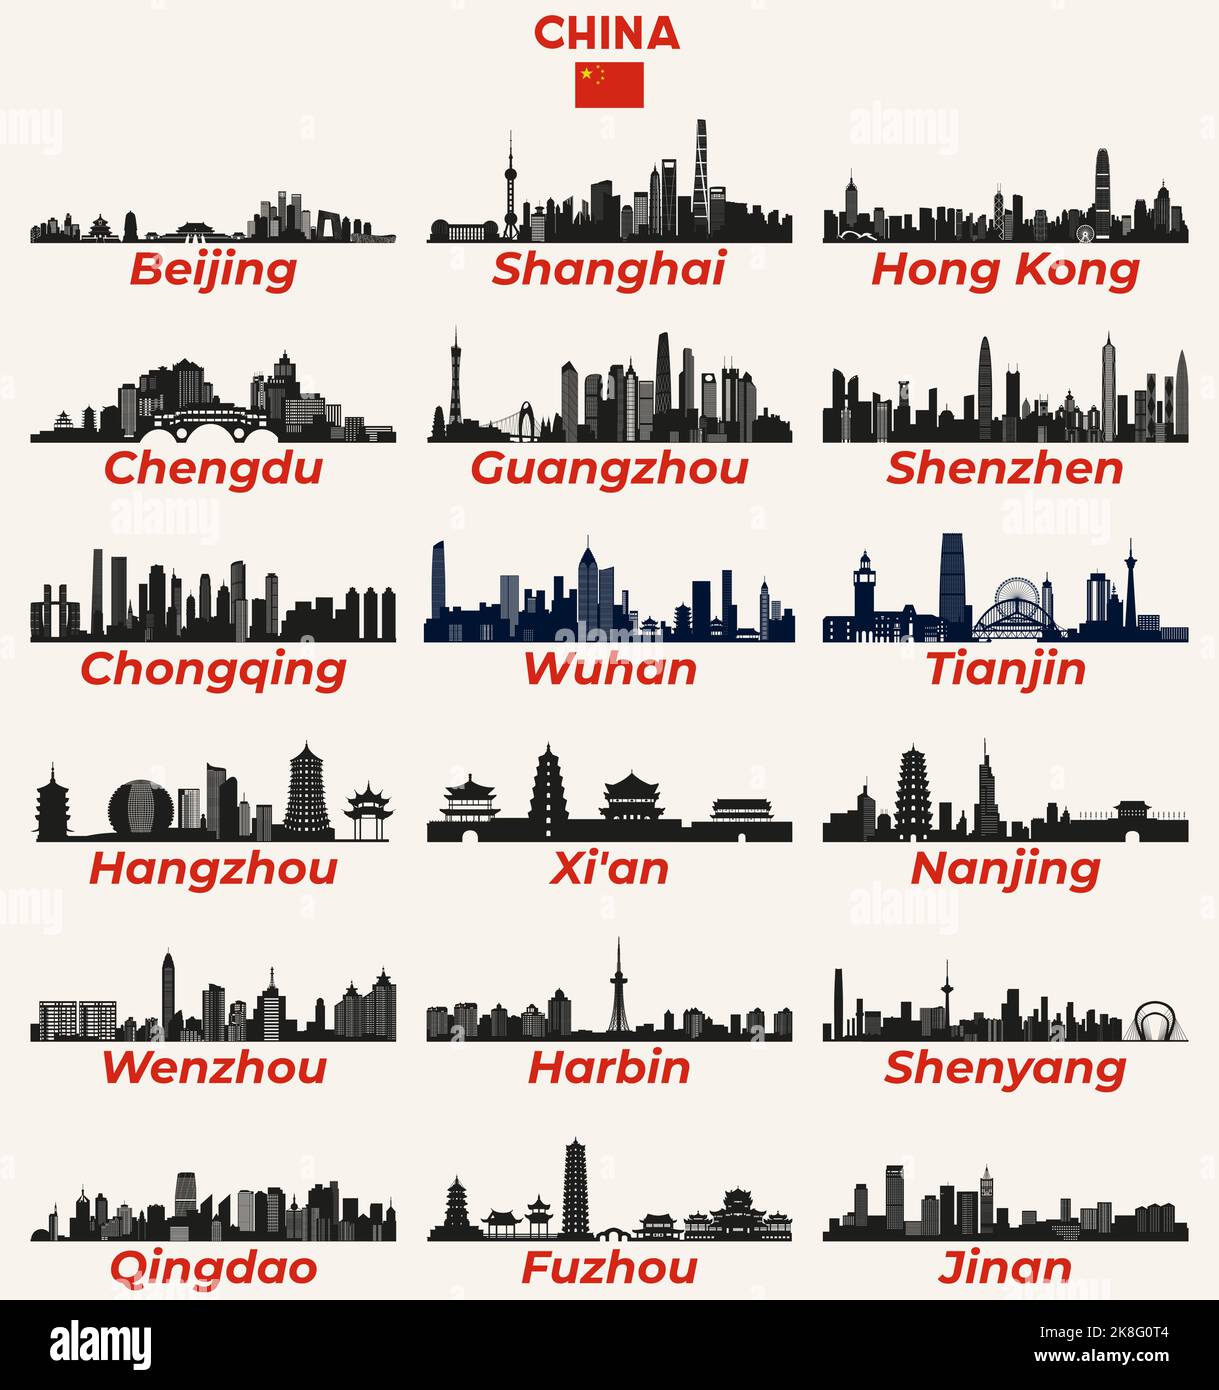 Chine villes skylines silhouettes ensemble de vecteur Illustration de Vecteur